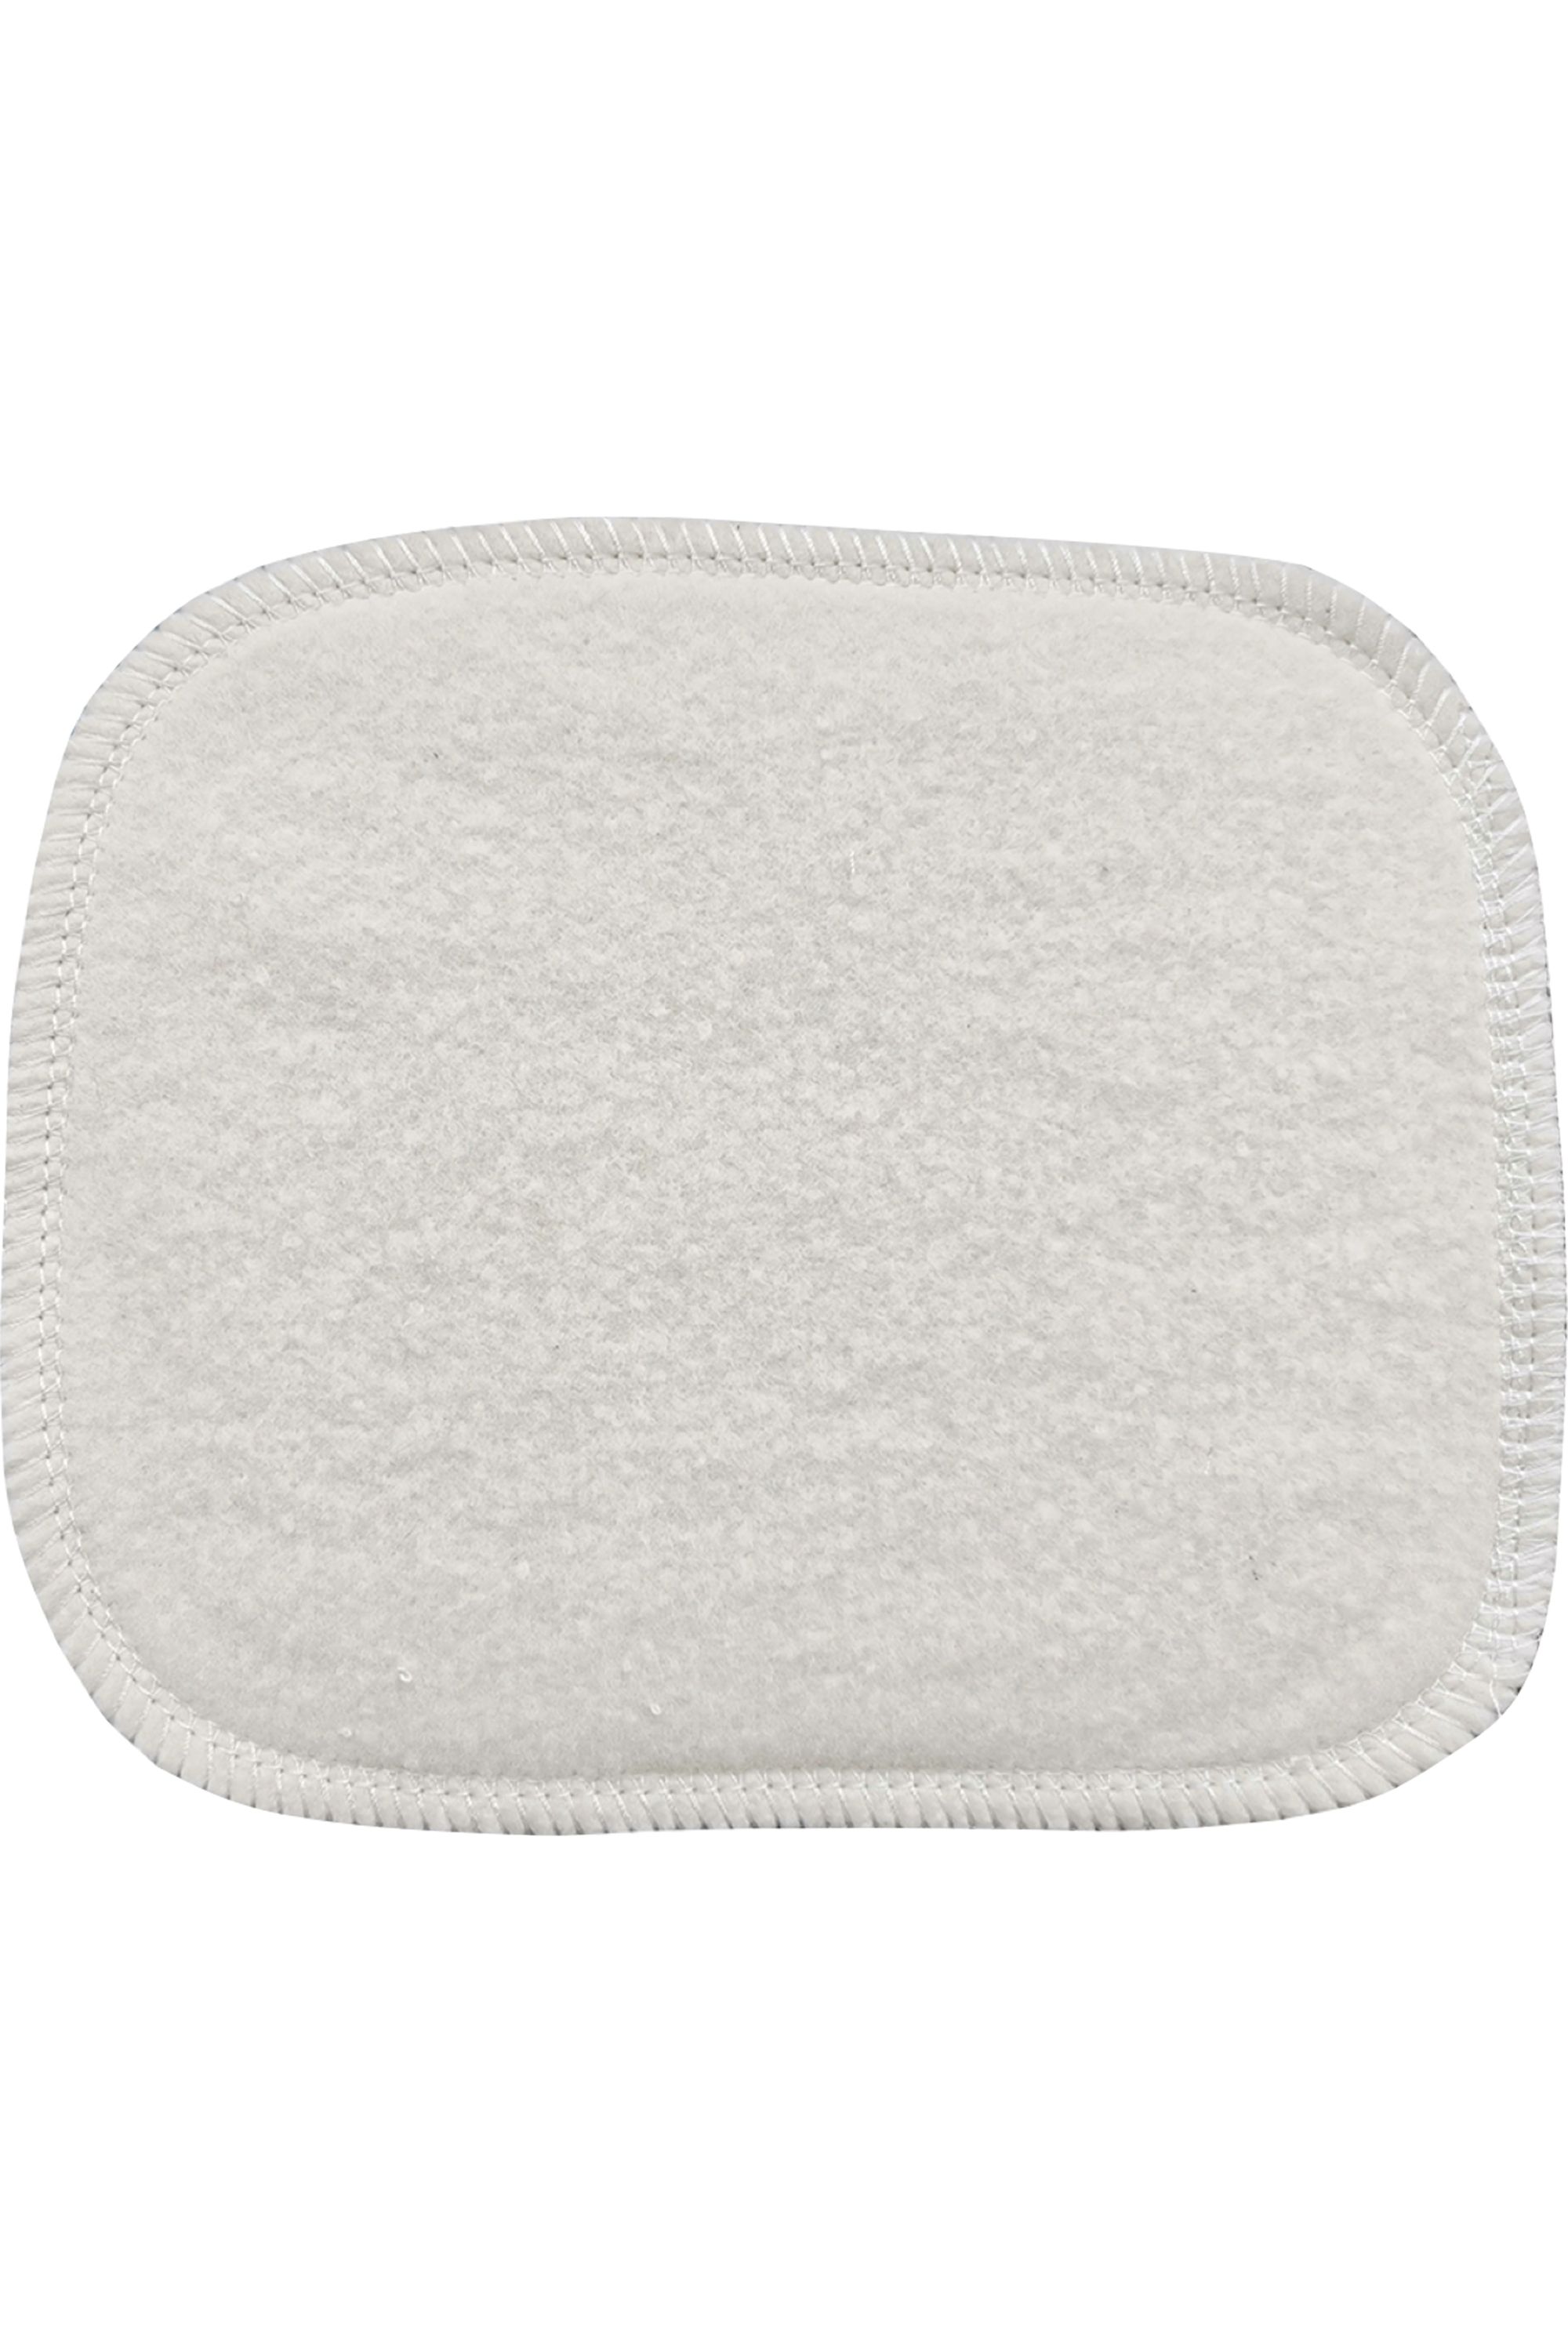 Avril - Grand carré lavable bébé en coton bio - Blissim